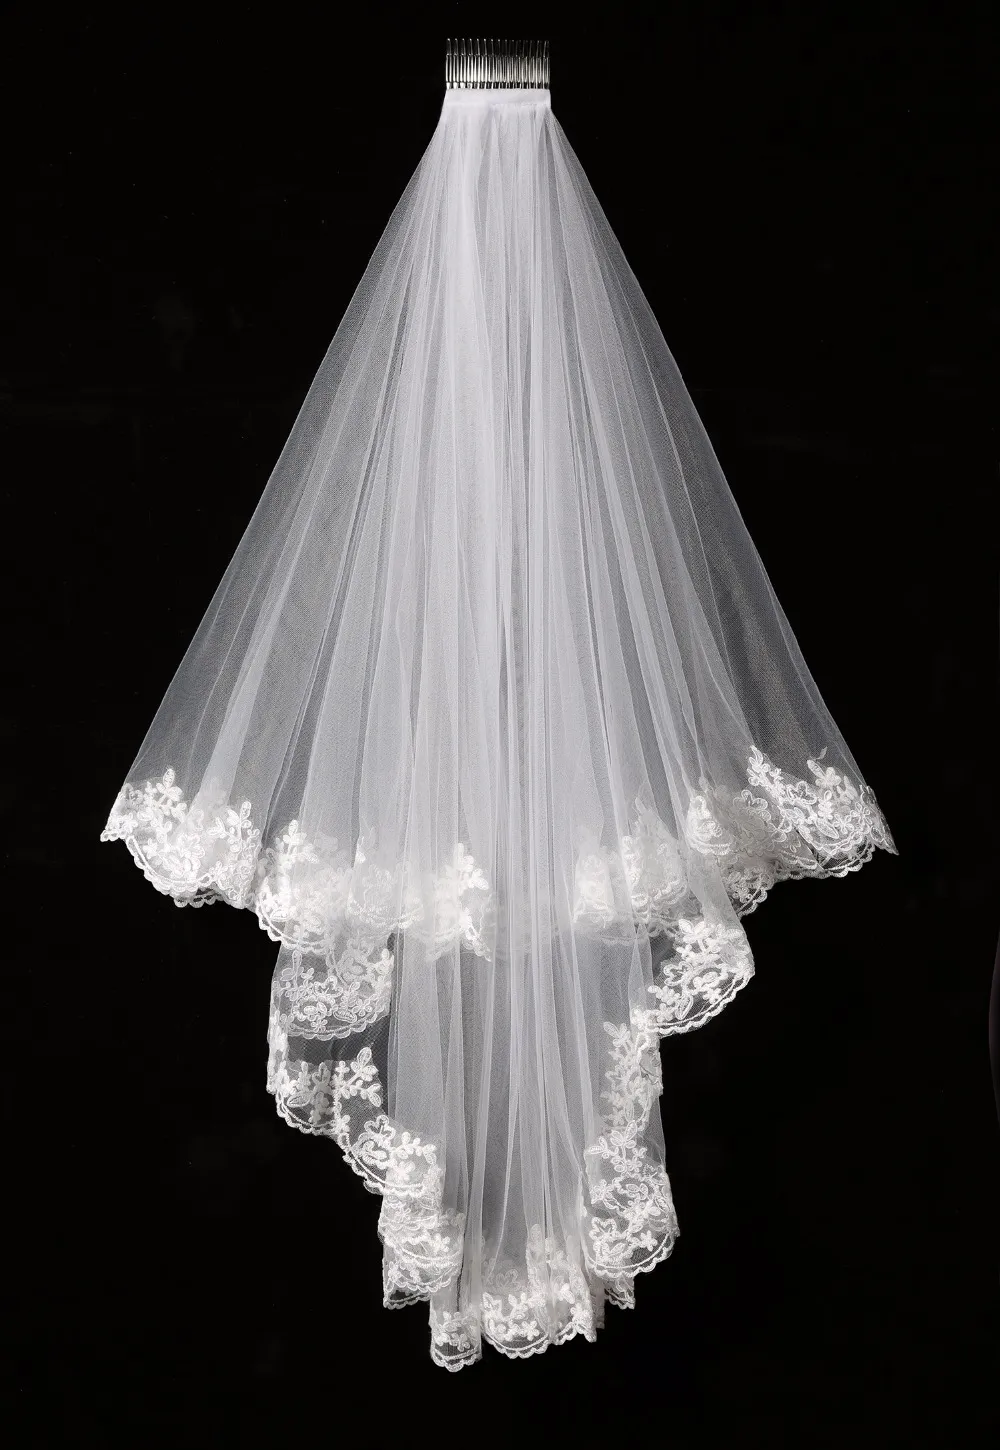 أنيقة أبيض / العاج طبقتين تول صافي تول العروس الحجاب 1.5 متر طويل الدانتيل حافة تول الحجاب لحفل الزفاف جديد شحن مجاني SLV002